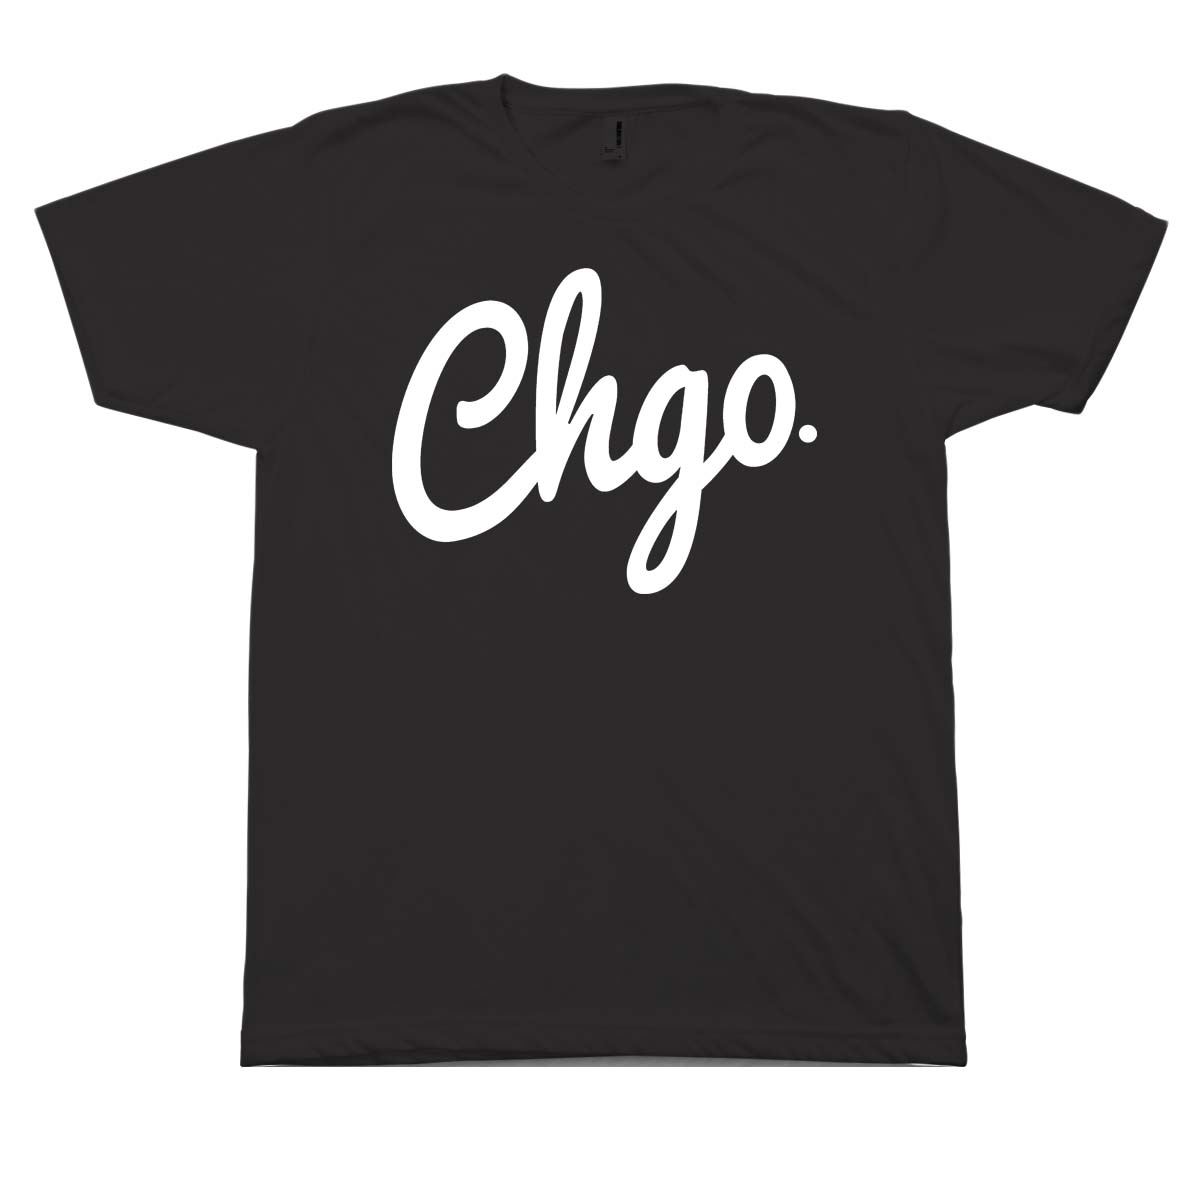 CHGO Black and White T-Shirt